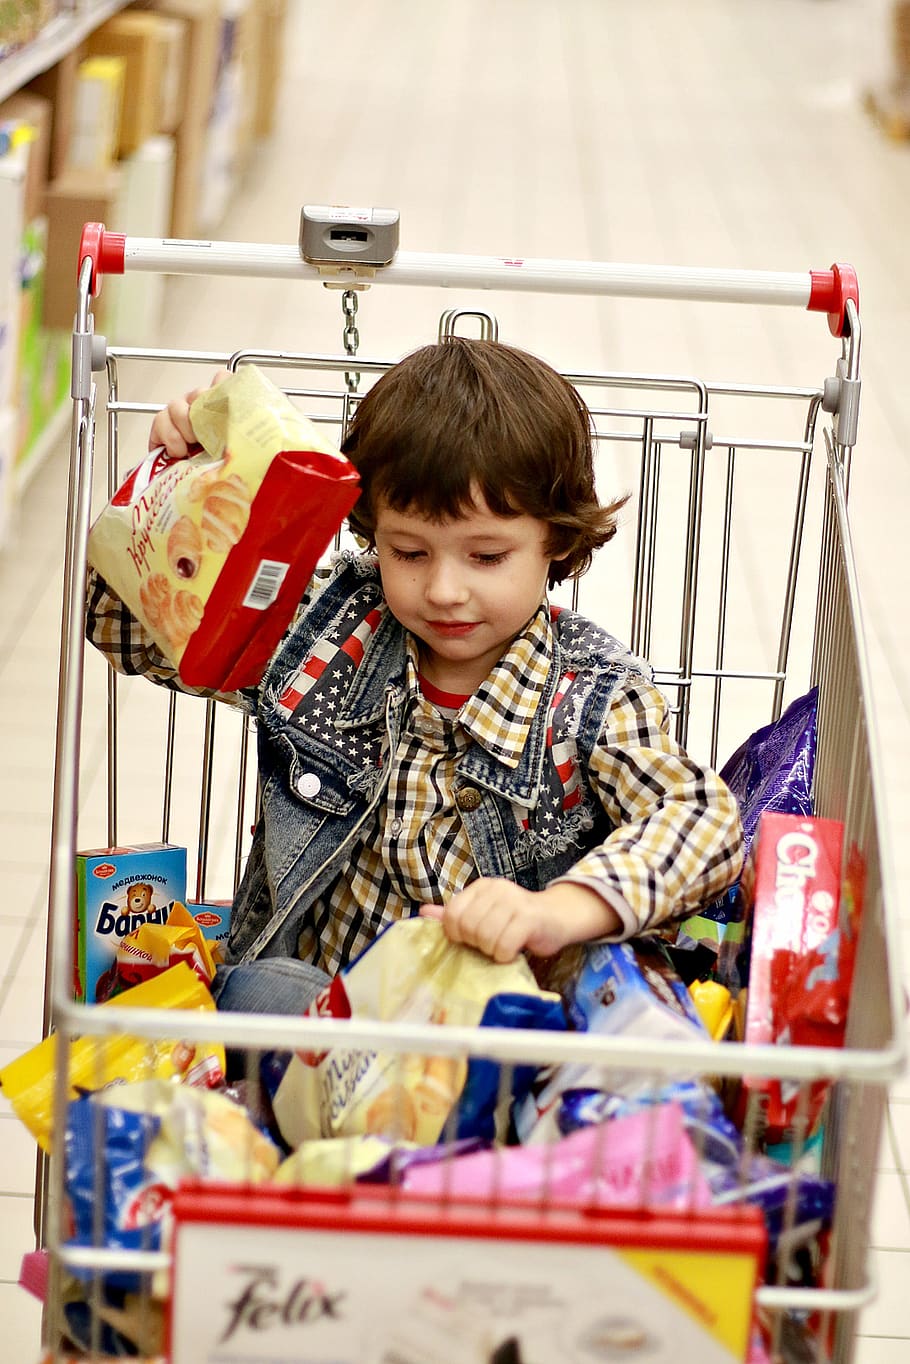 tienda, productos, compra, el niño en la canasta, el niño en el carrito, dulces, productos para bebés, chocolate, chocolates, postres